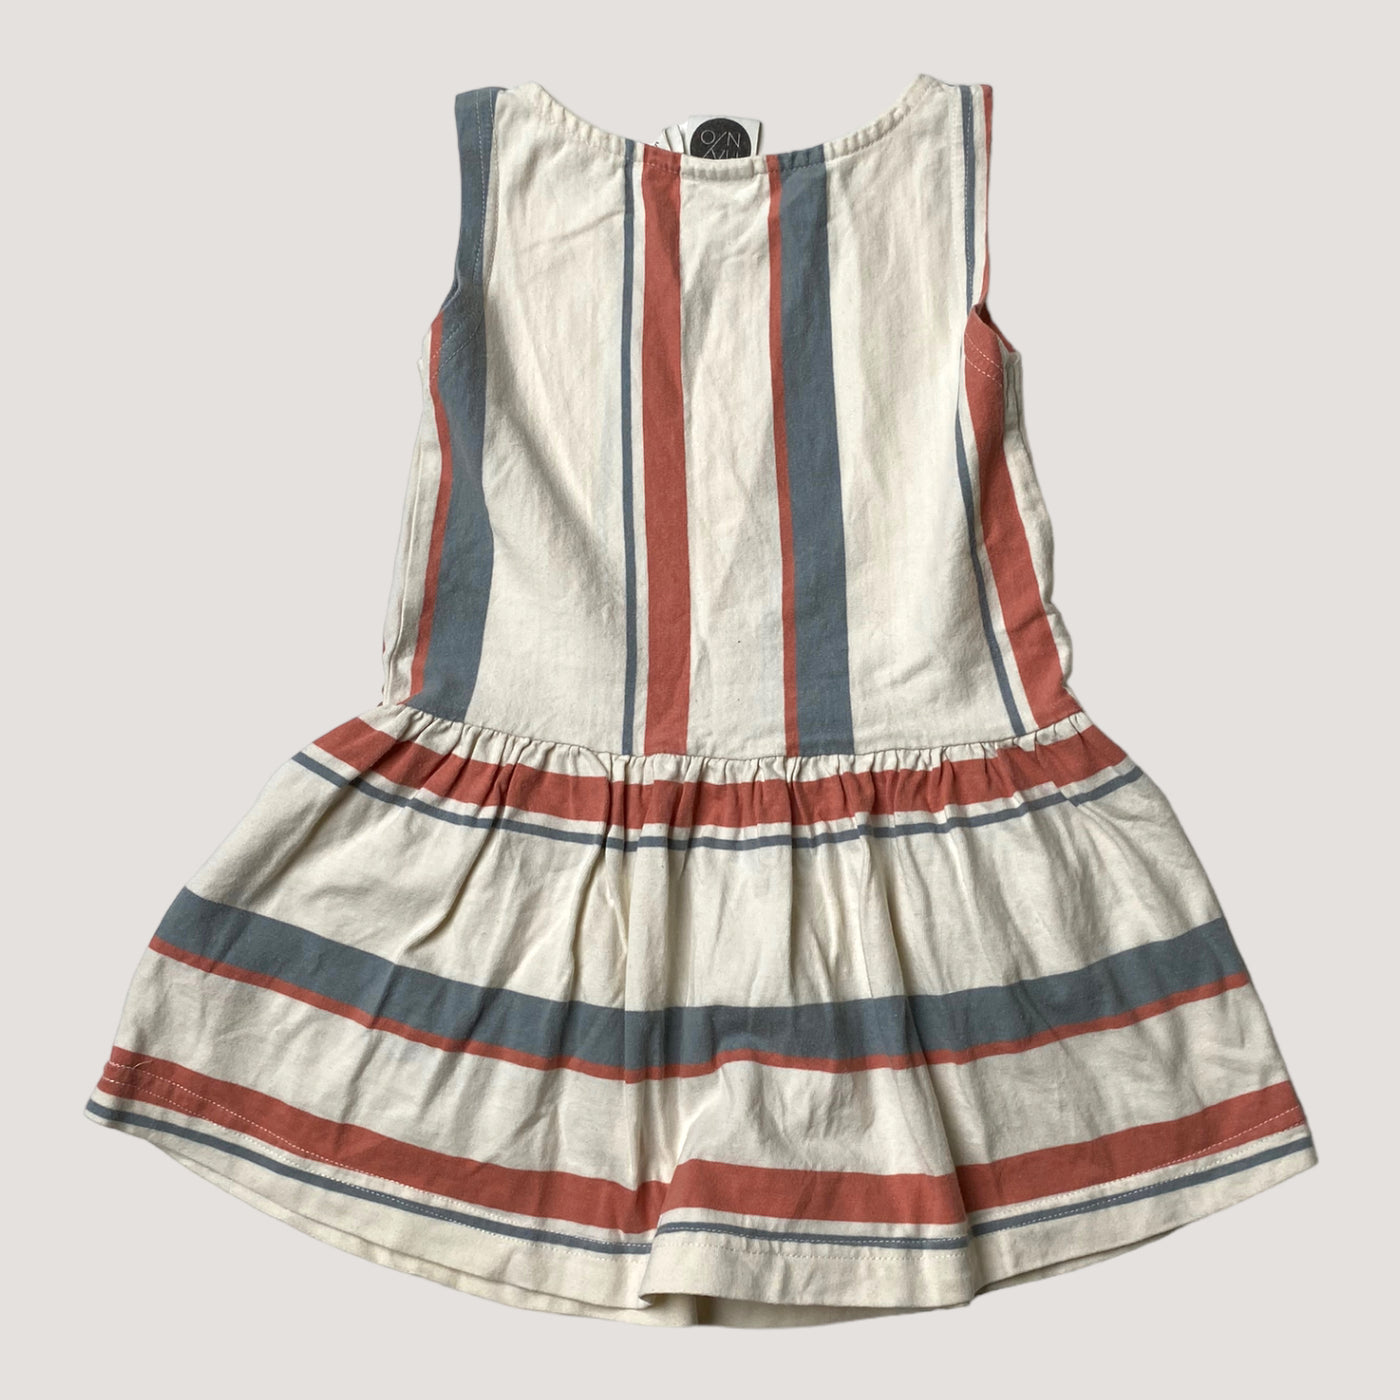 Mainio dress, stripes | 86/92cm